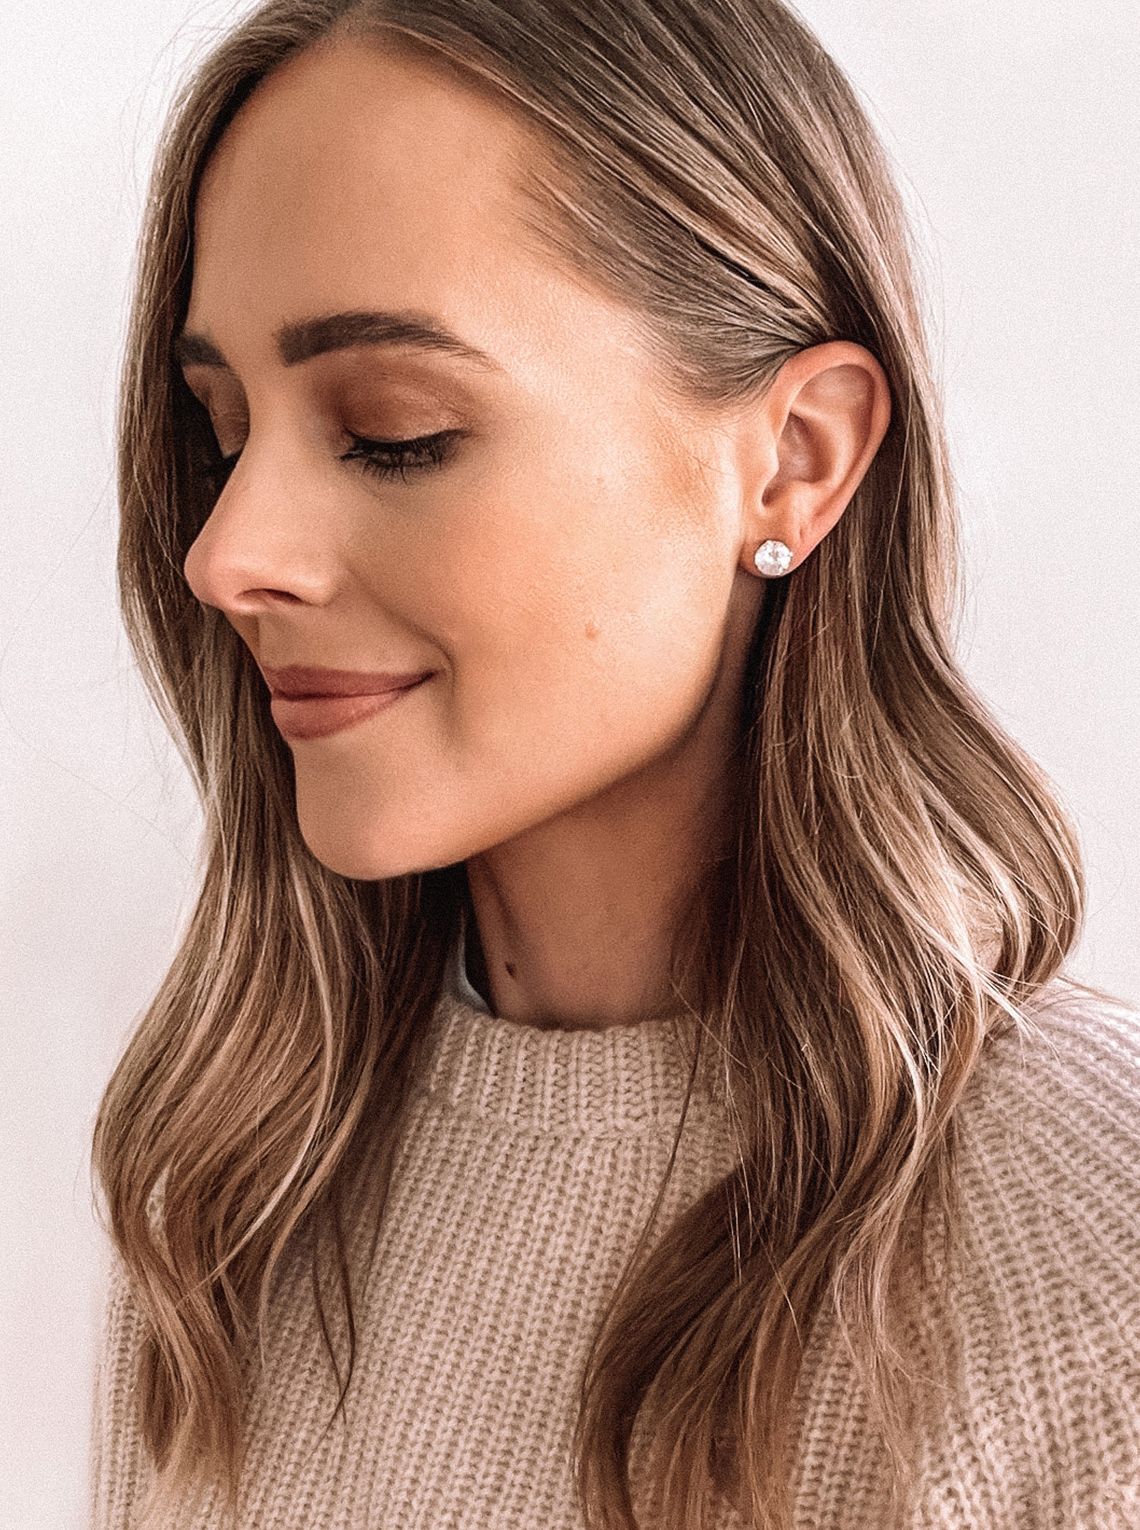 Cheap New Hot Style Earrings Women Fashion and Elegant Long Drop Earrings  Ear Studs Jewelry